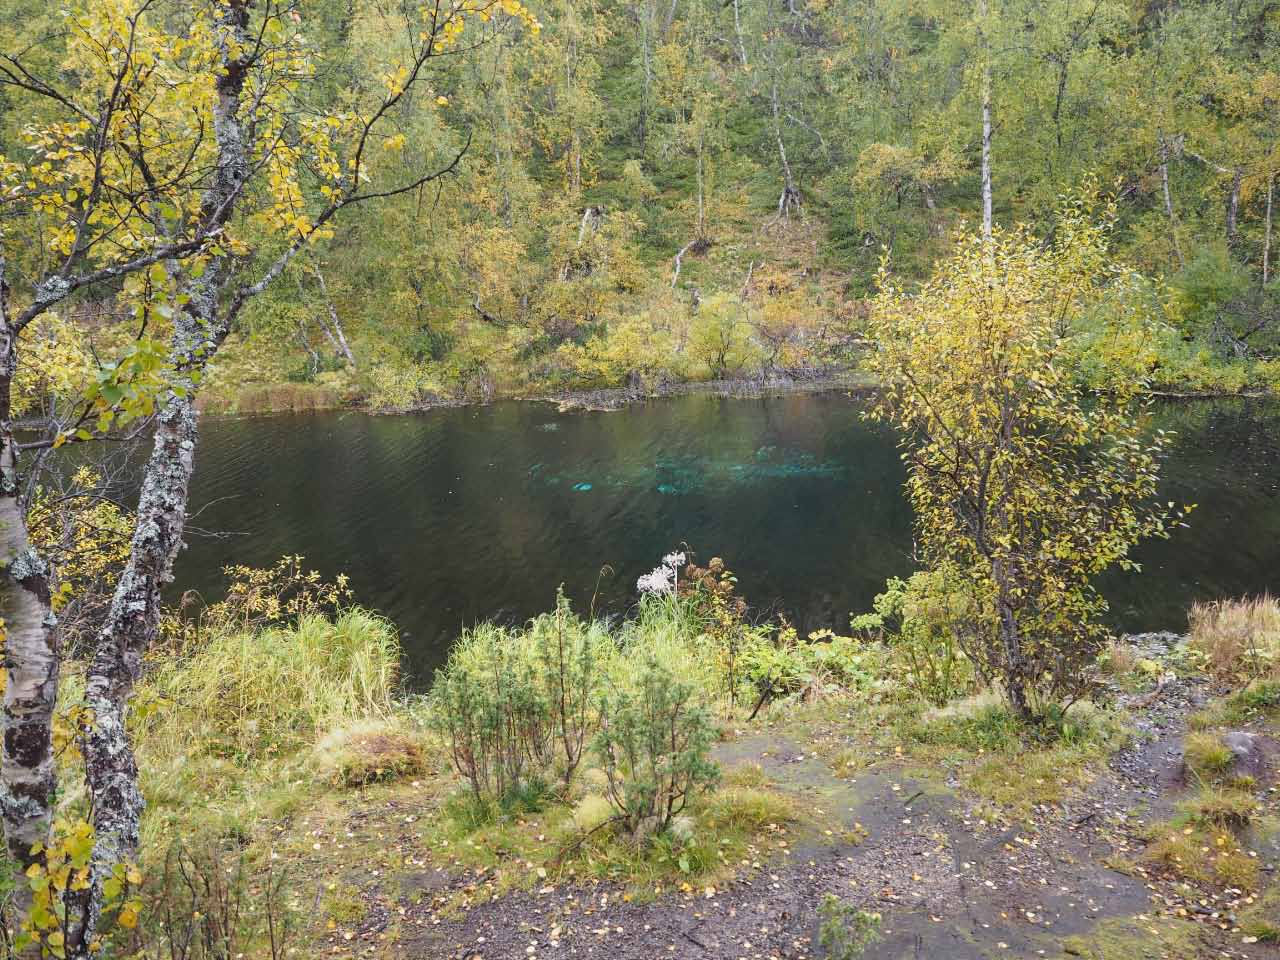 Kuva: Järven pohjassa oleva lähdealue itäosassa, kuvattu eteläkaakosta. Petri Halinen 1.9.2021